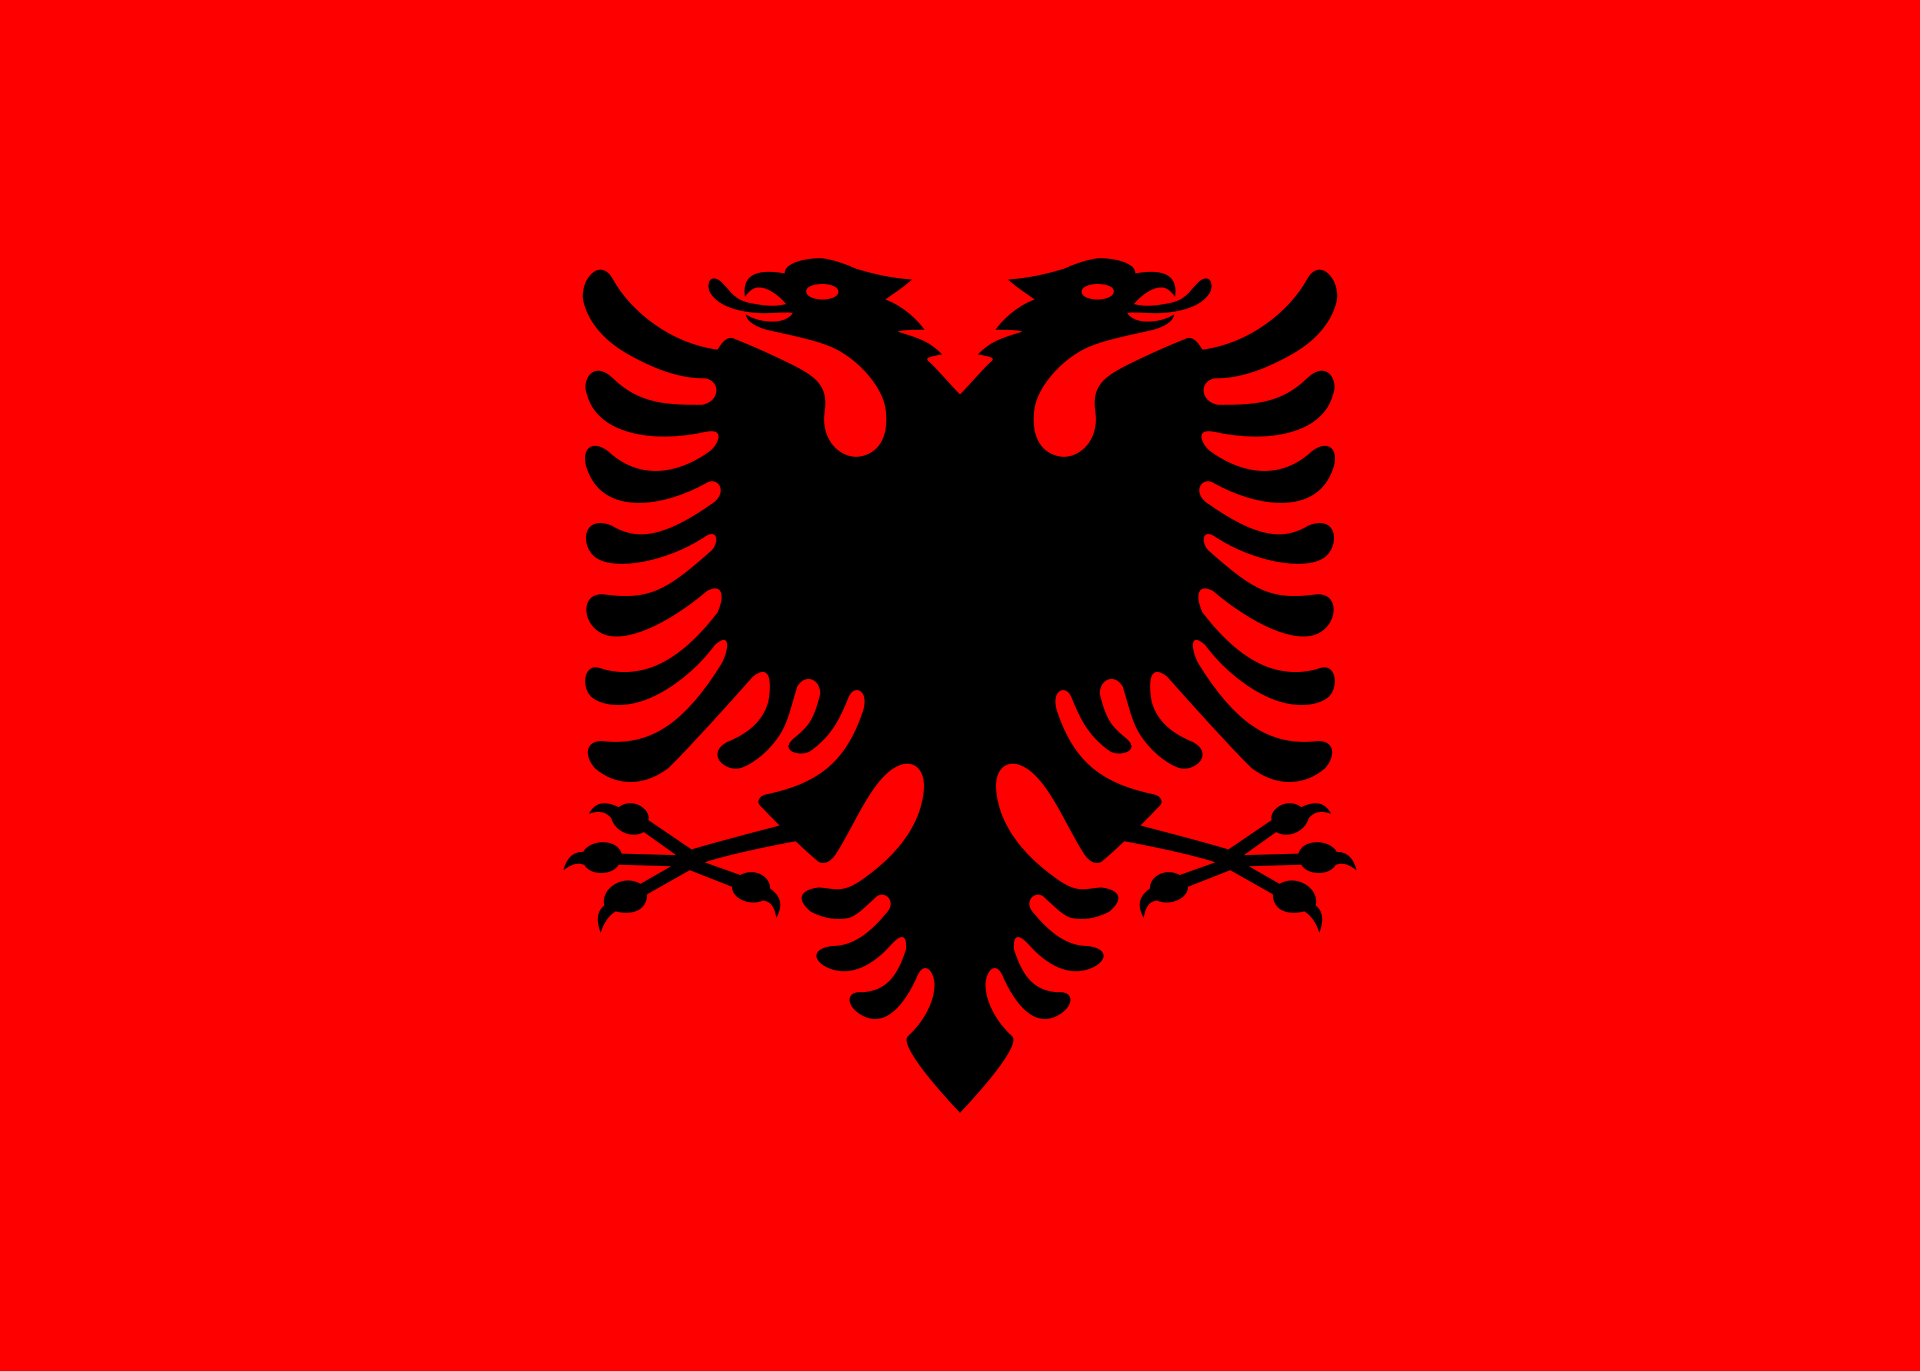 Steagul Albaniei